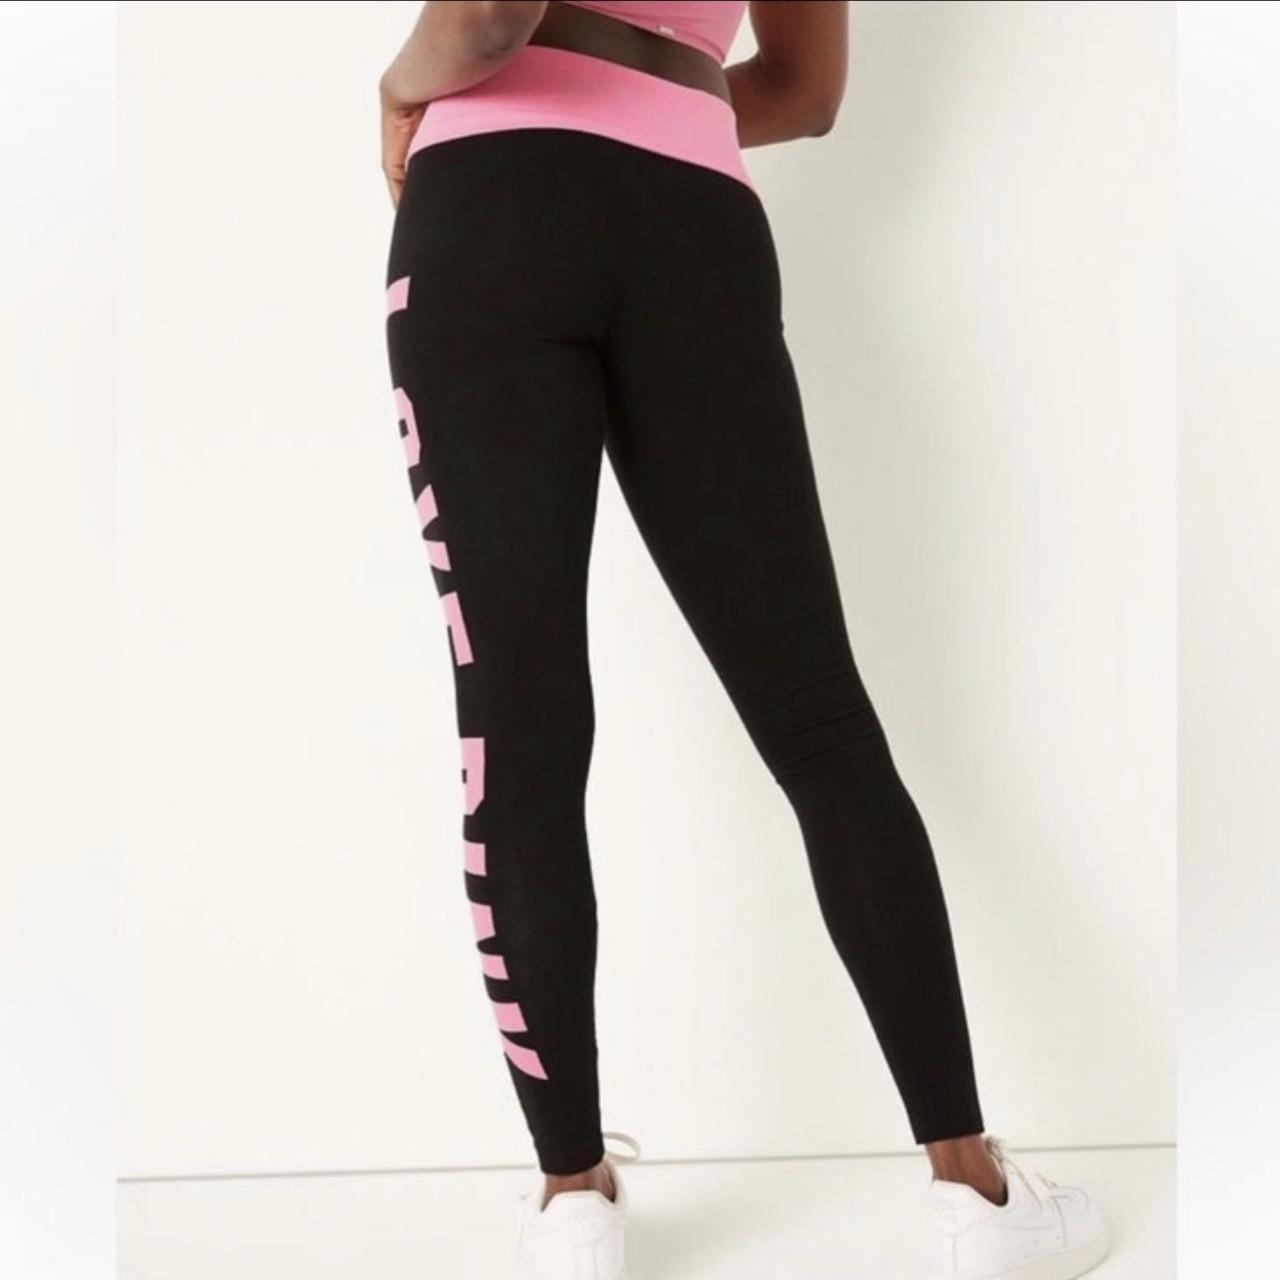 Victoria's Secret pink fold over yoga pants Chicago - Depop